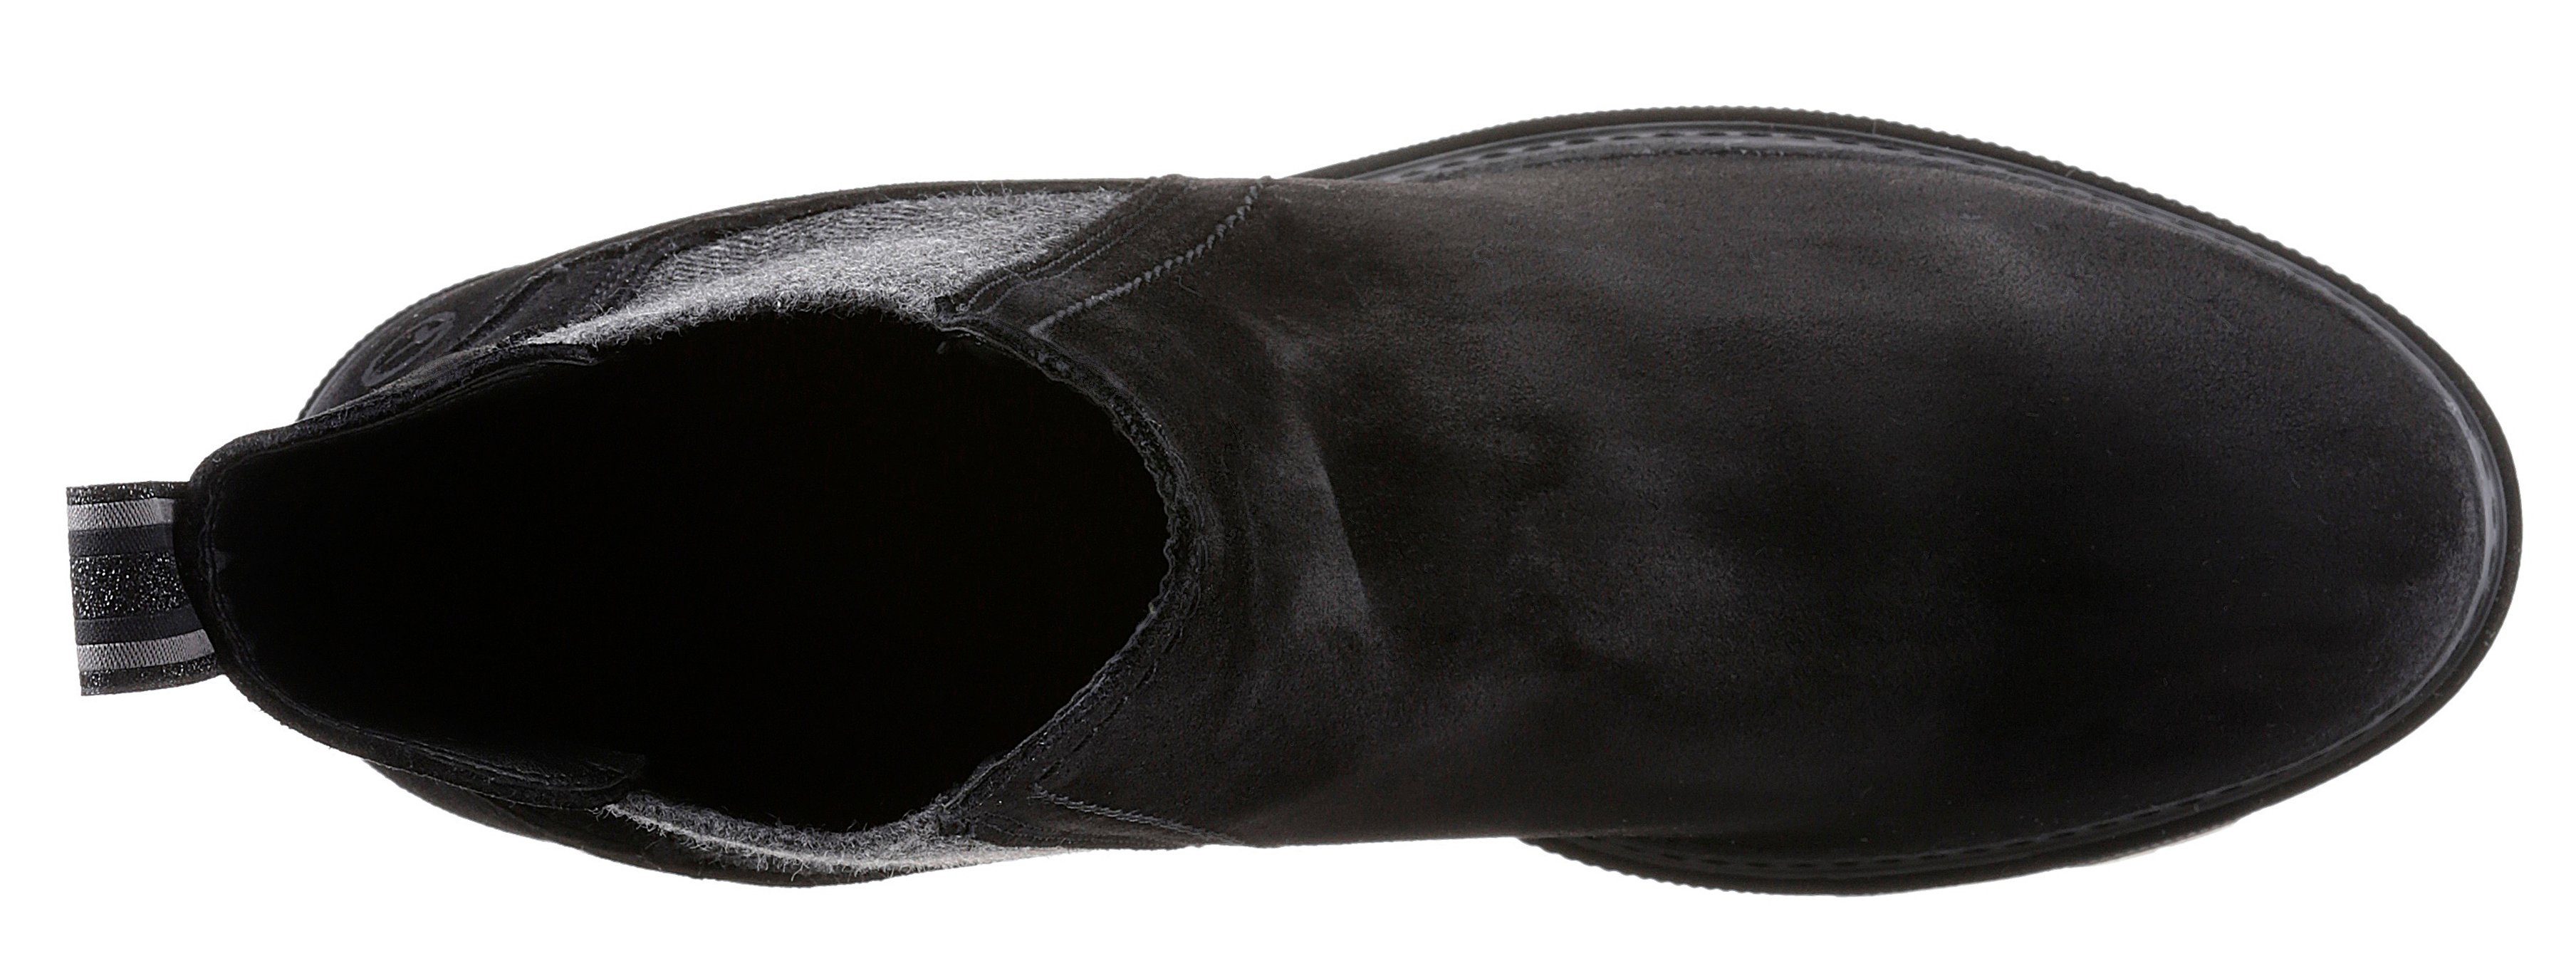 Panna Tamaris trendigen Stiefelette schwarz Streifenbesatz mit